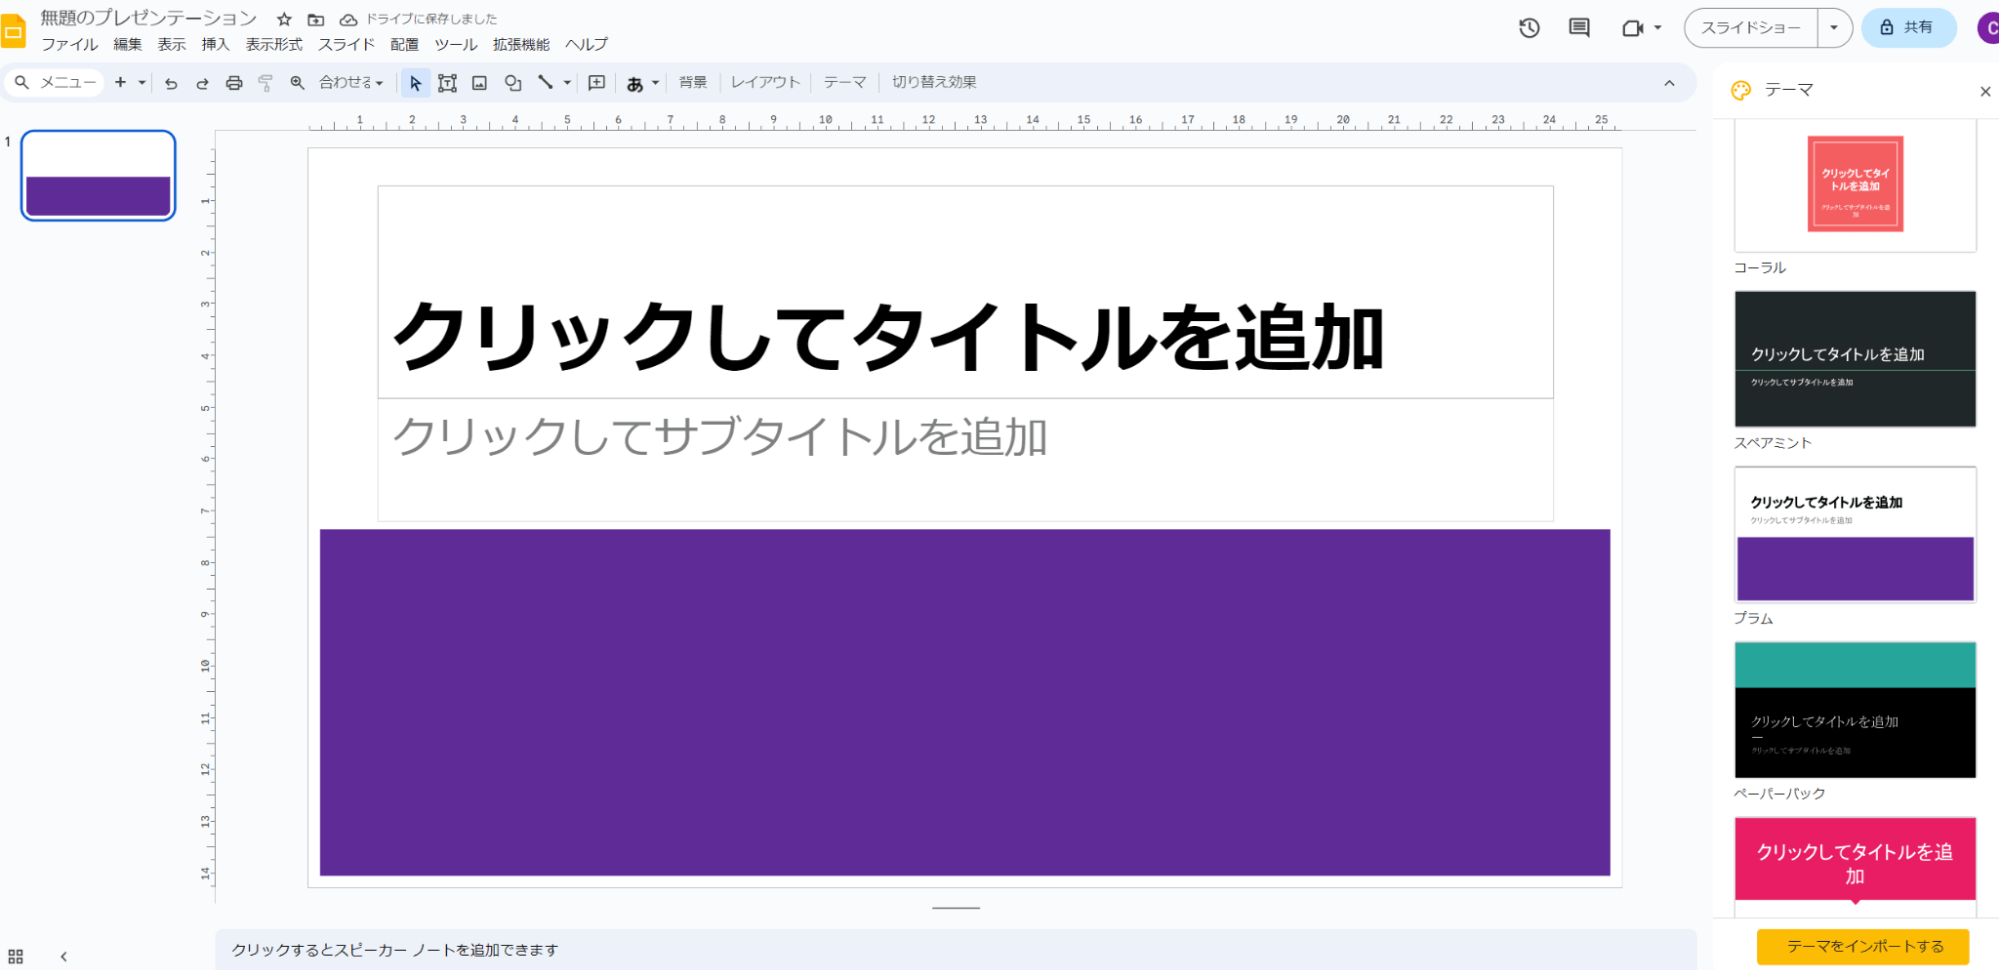 テーマ「プラム」をクリックすると紫色が強調されるデザイン